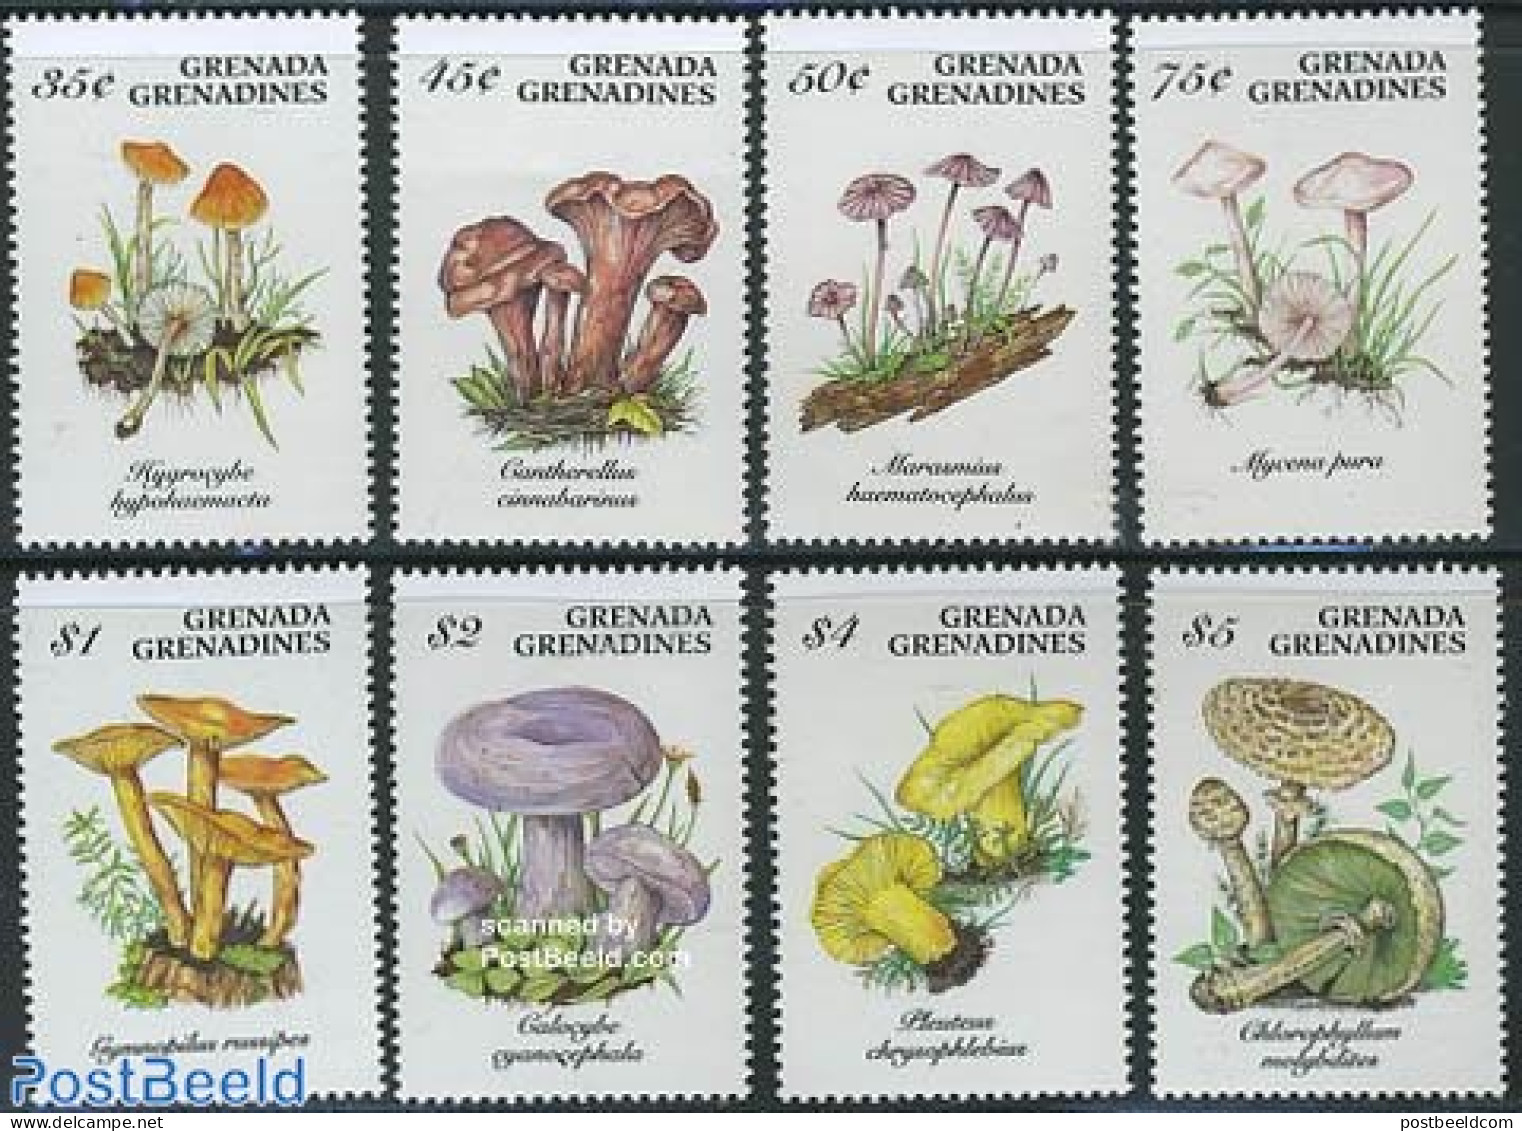 Grenada Grenadines 1994 Mushrooms 8v, Mint NH, Nature - Mushrooms - Mushrooms